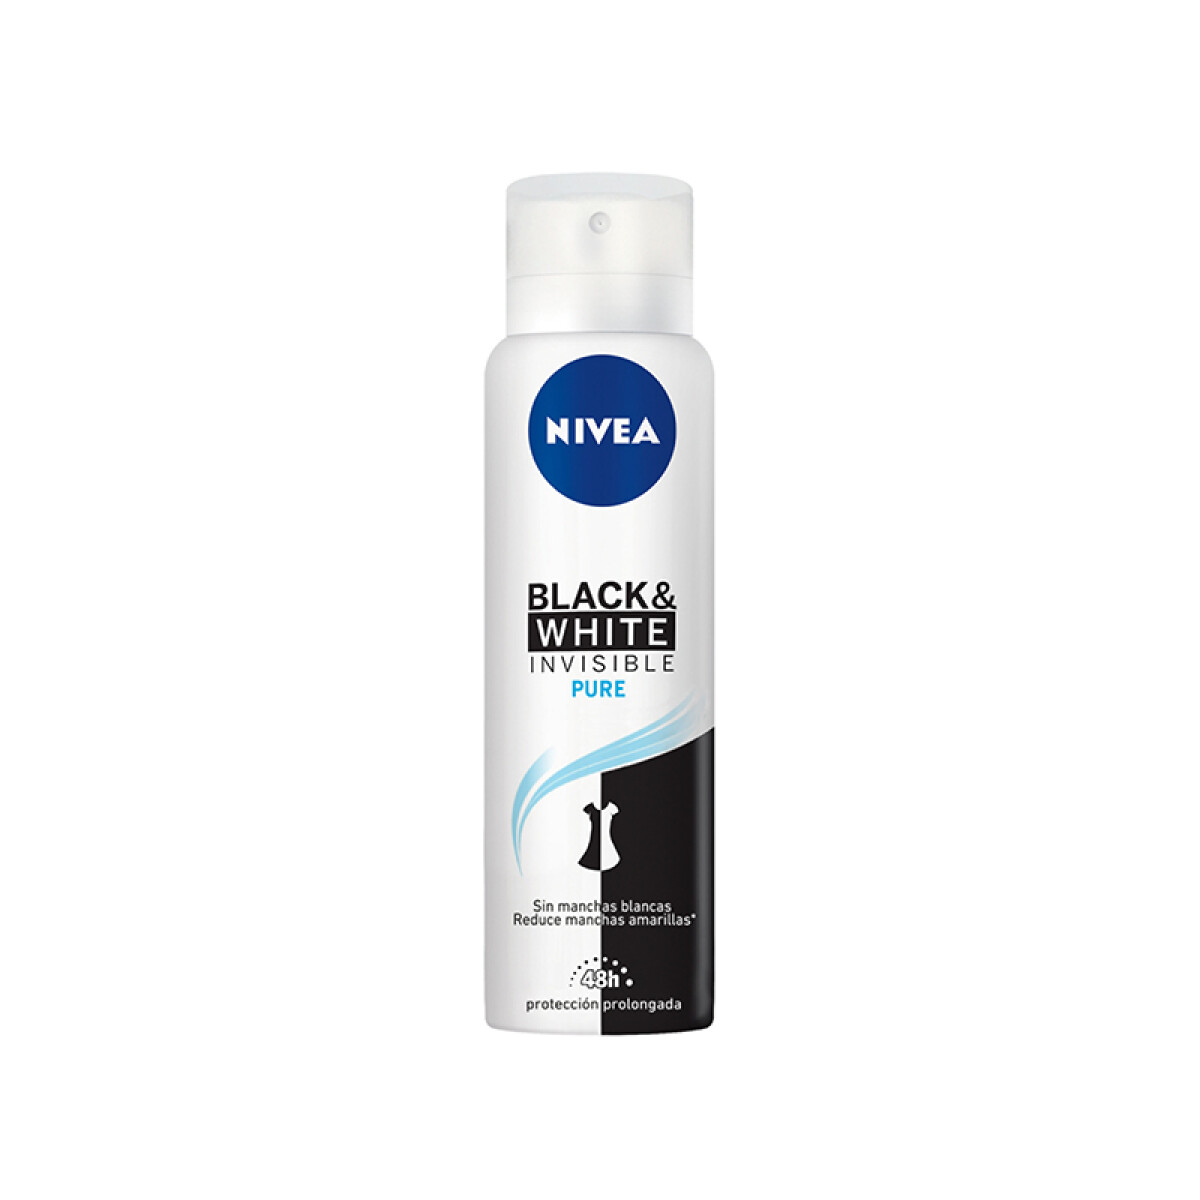 Nivea desodorante spray 150 ml - -Black & white invisible pure 